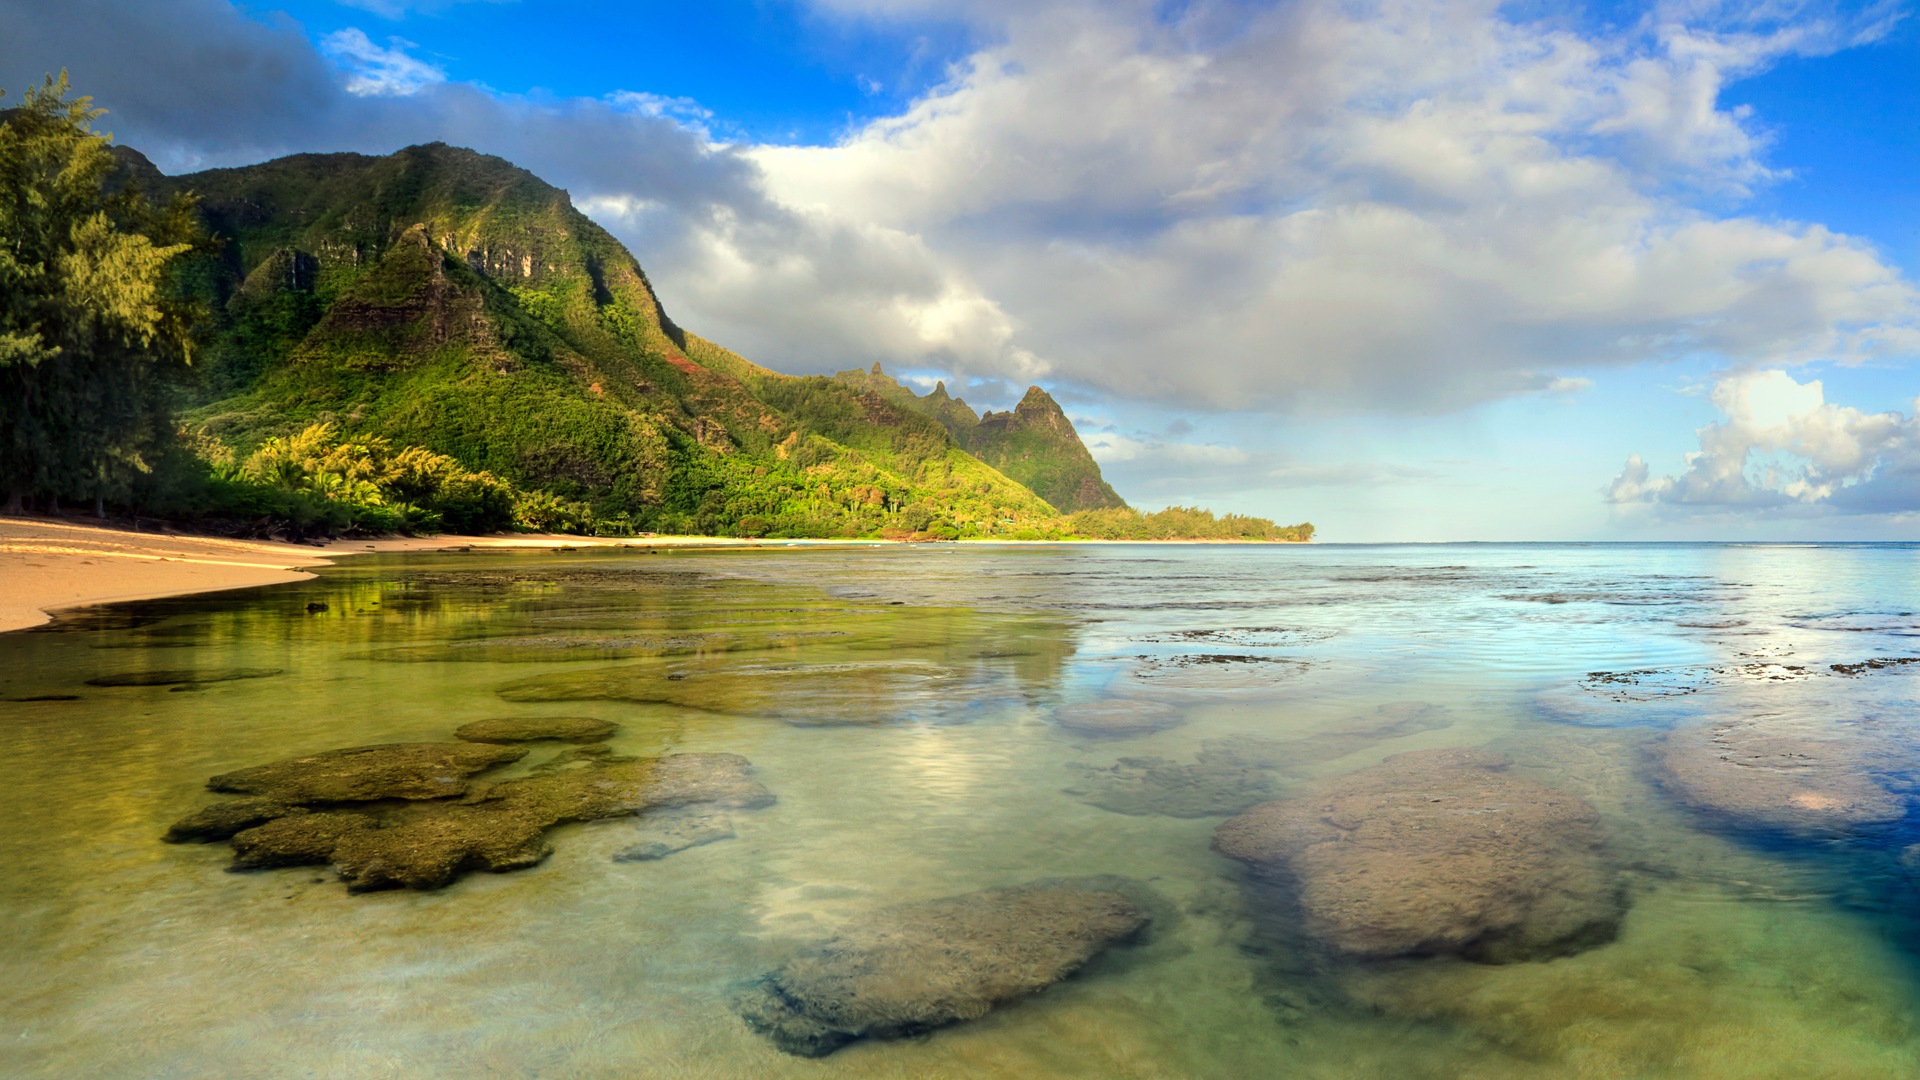 Windows 8 fond d'écran thème: paysage hawaïen #1 - 1920x1080